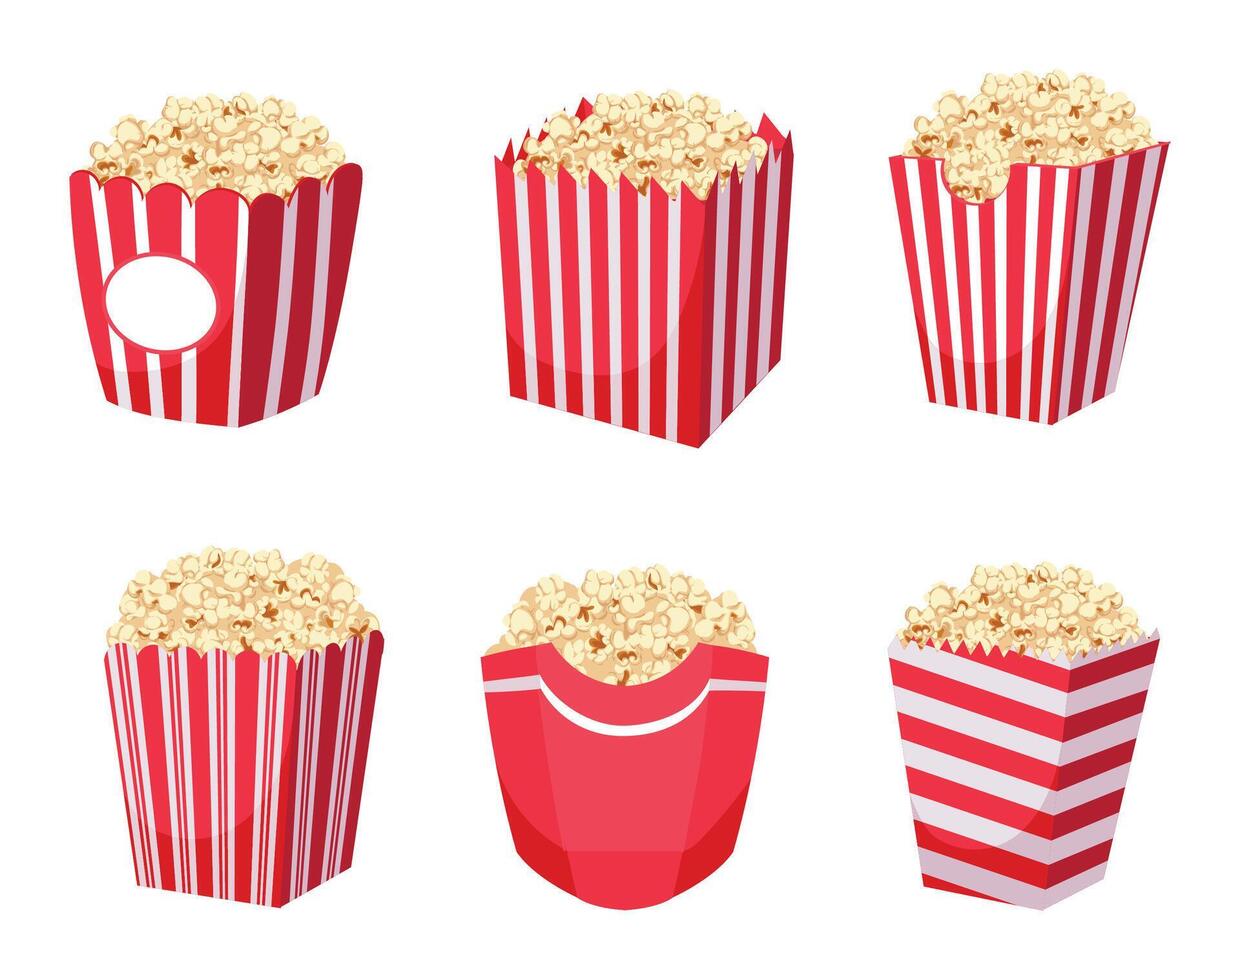 Popcorn benne collezione per cinema o sport evento vettore